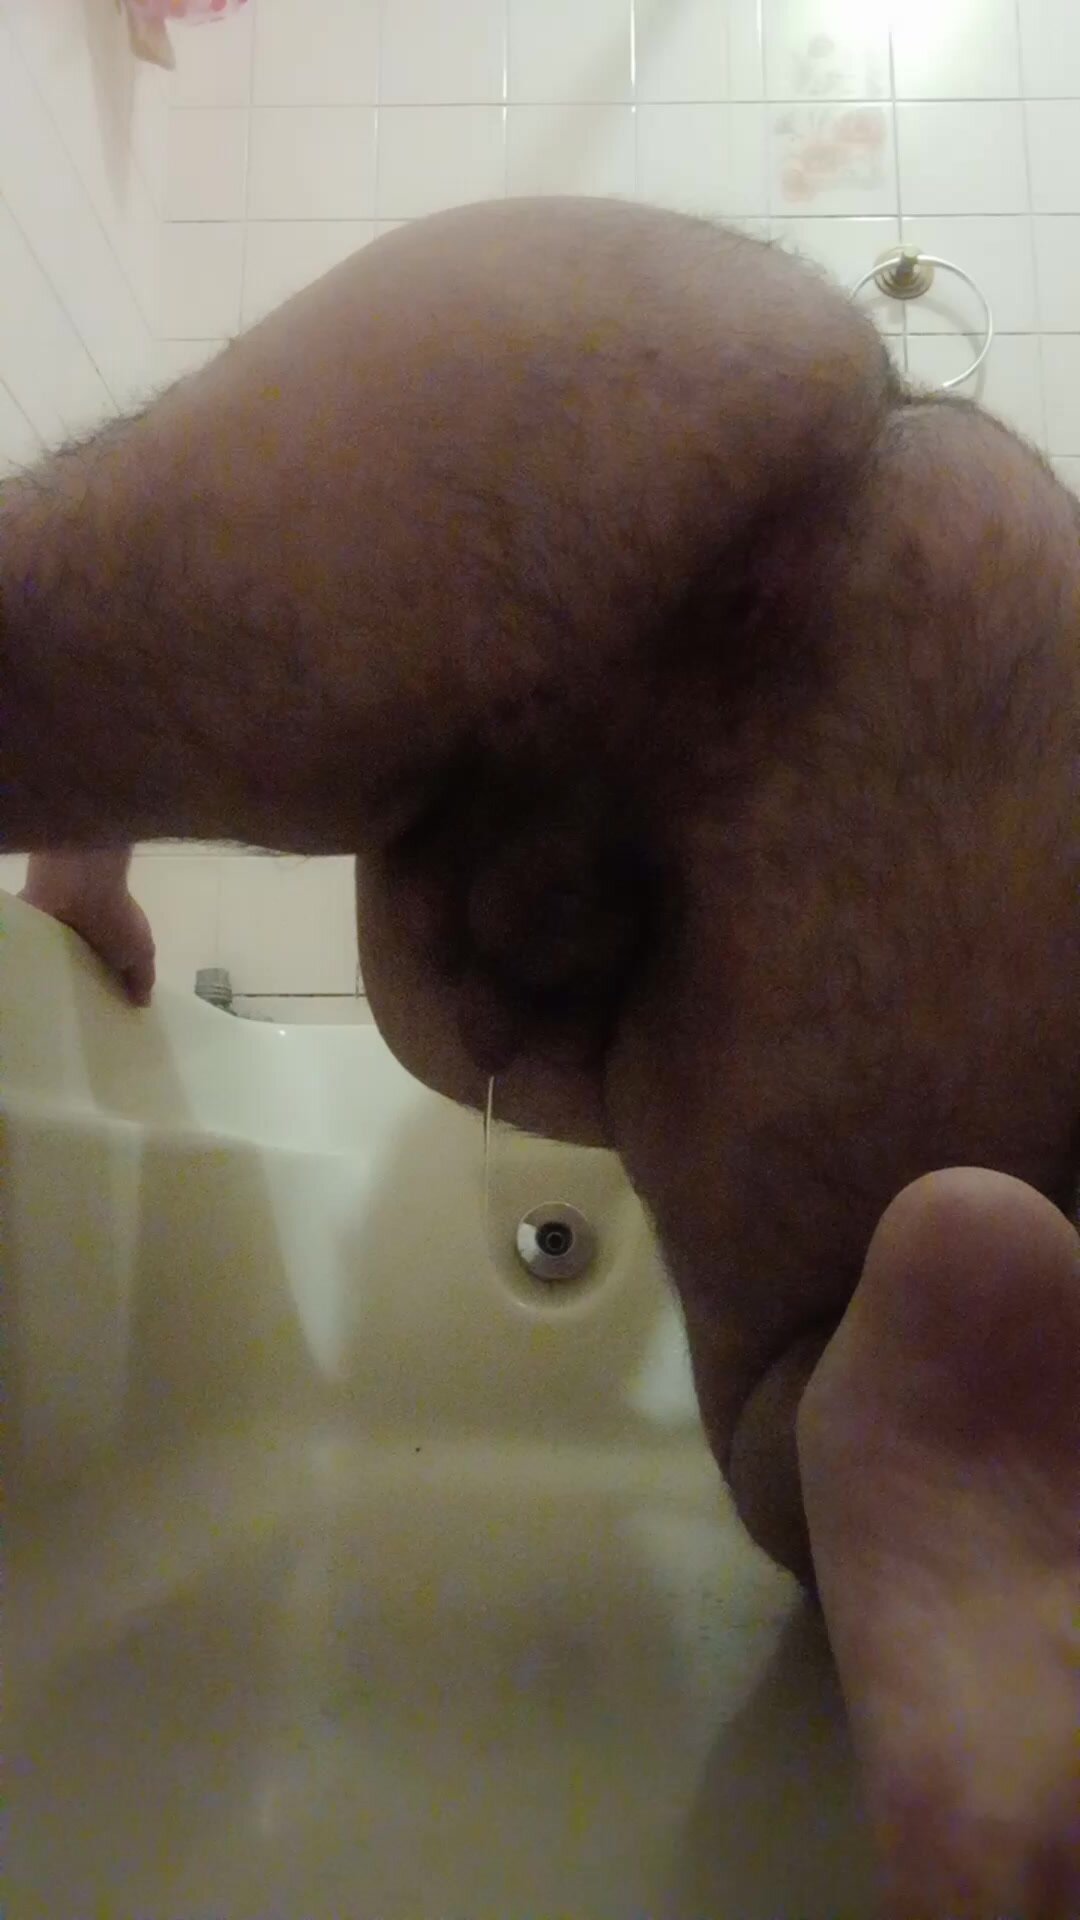 Big bear taking an urgent shit ar bathtub